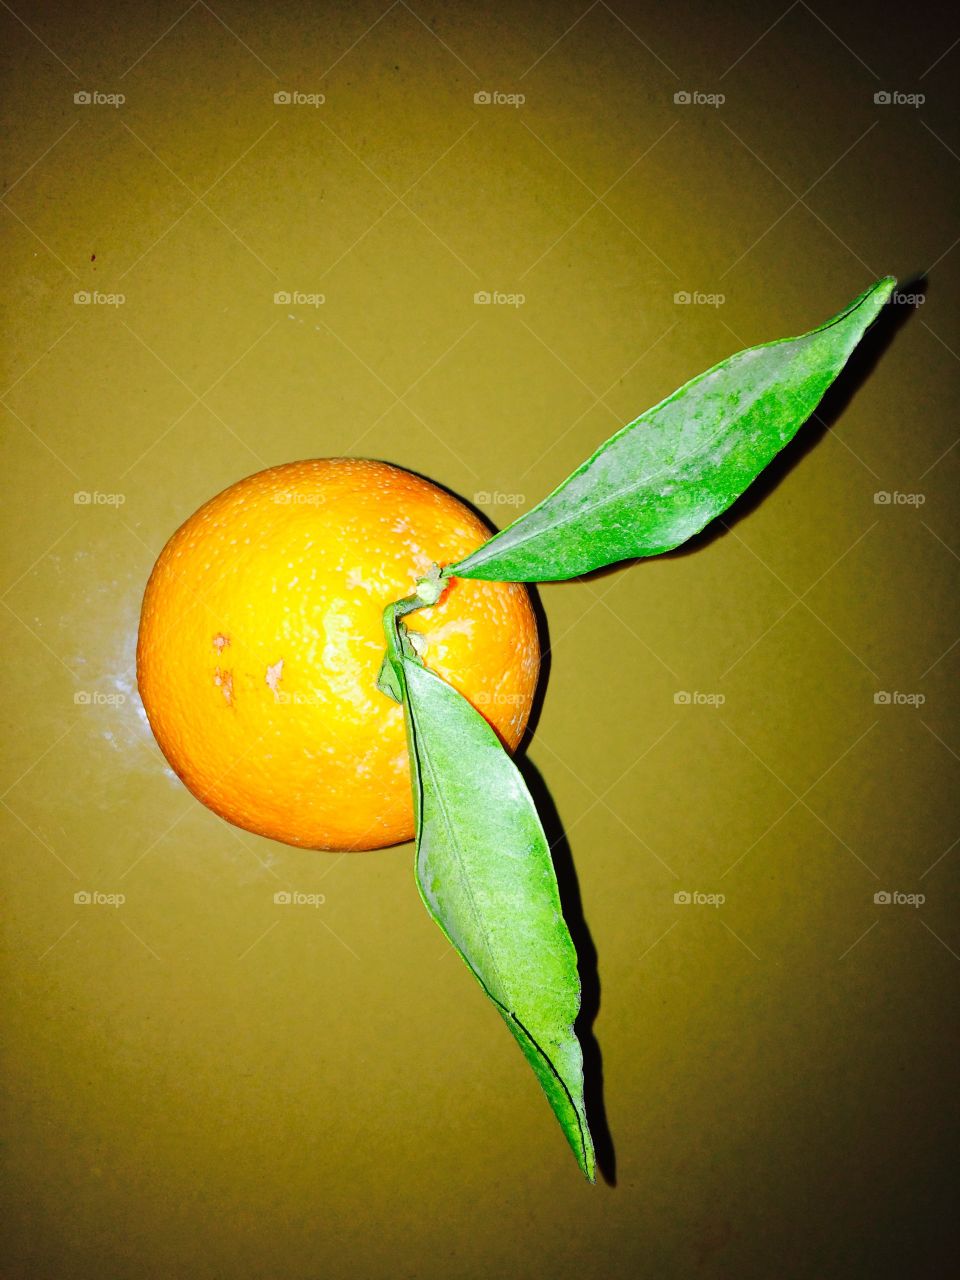 Orange  @foap #food